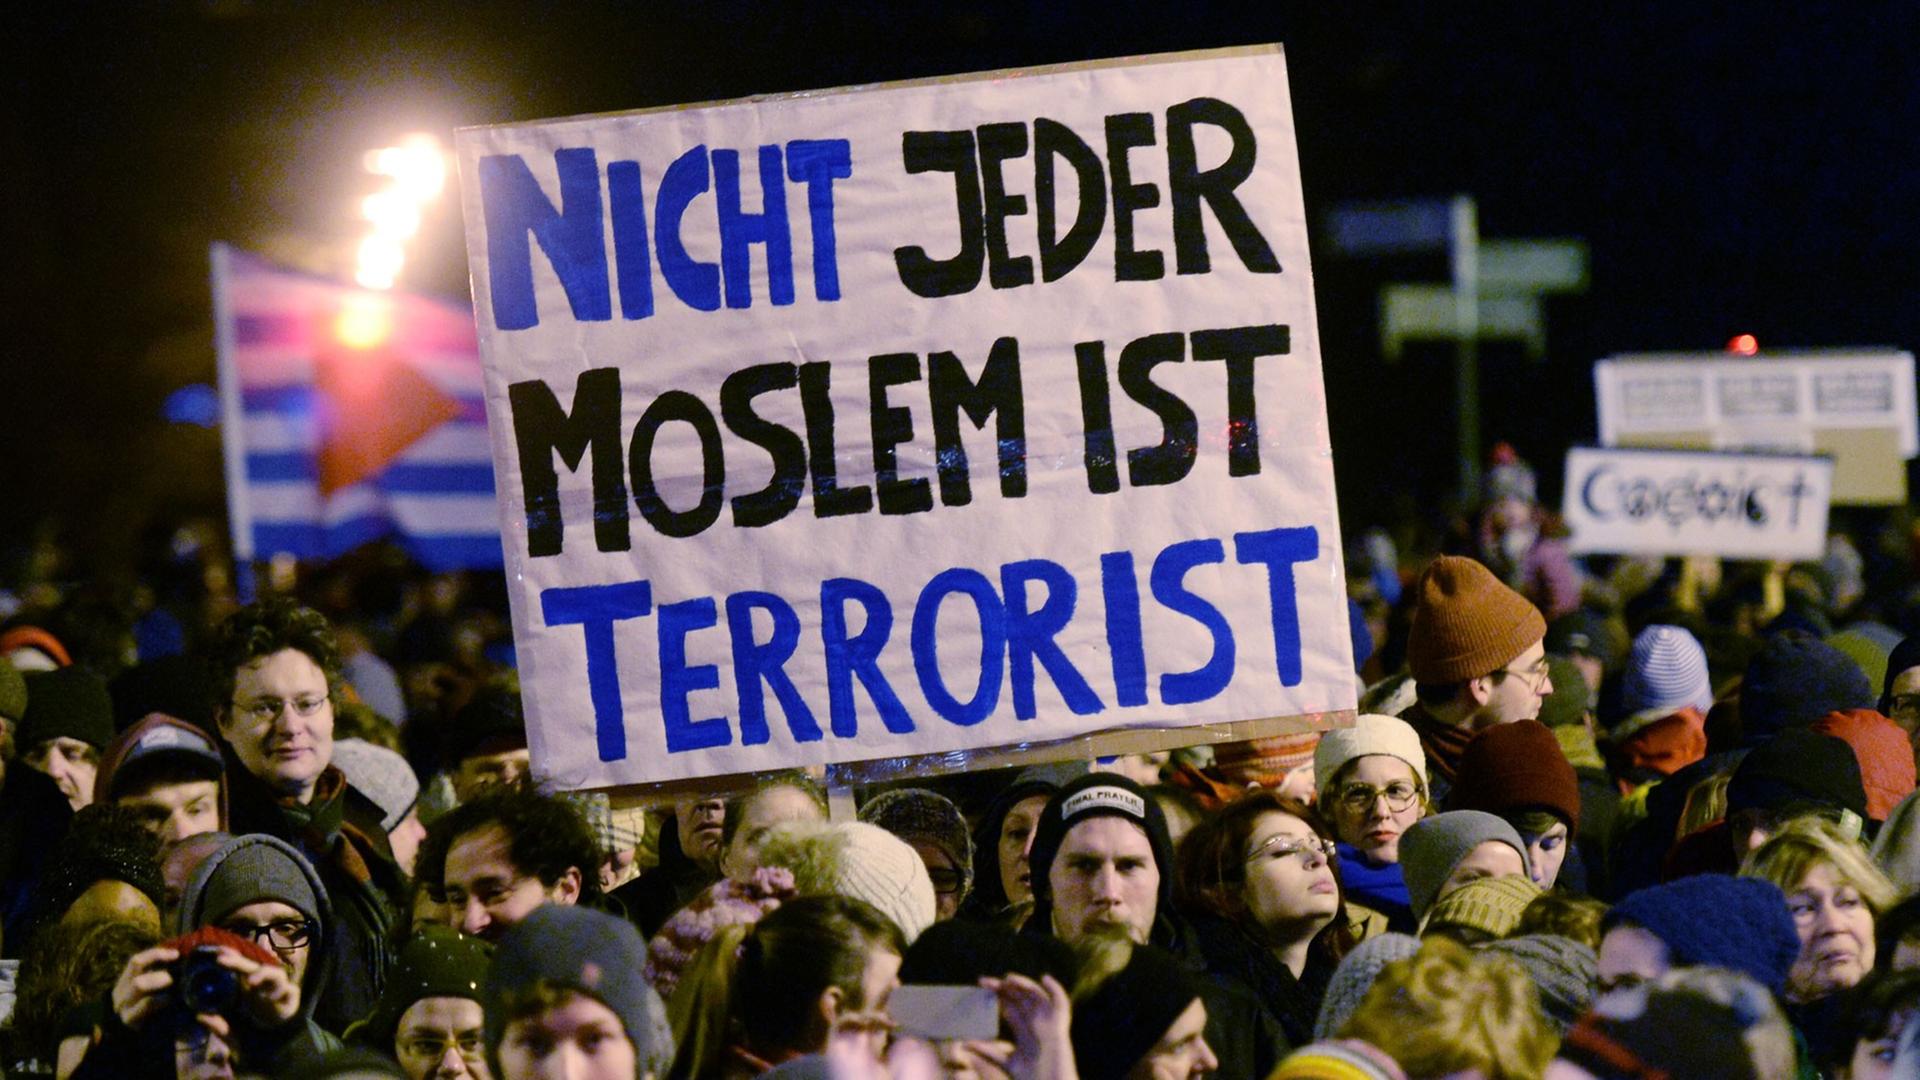 Teilnehmer einer Demonstration gegen die islamfeindliche Legida-Bewegung halten am 12.01.2015 in Leipzig (Sachsen) Transparente in die Höhe.